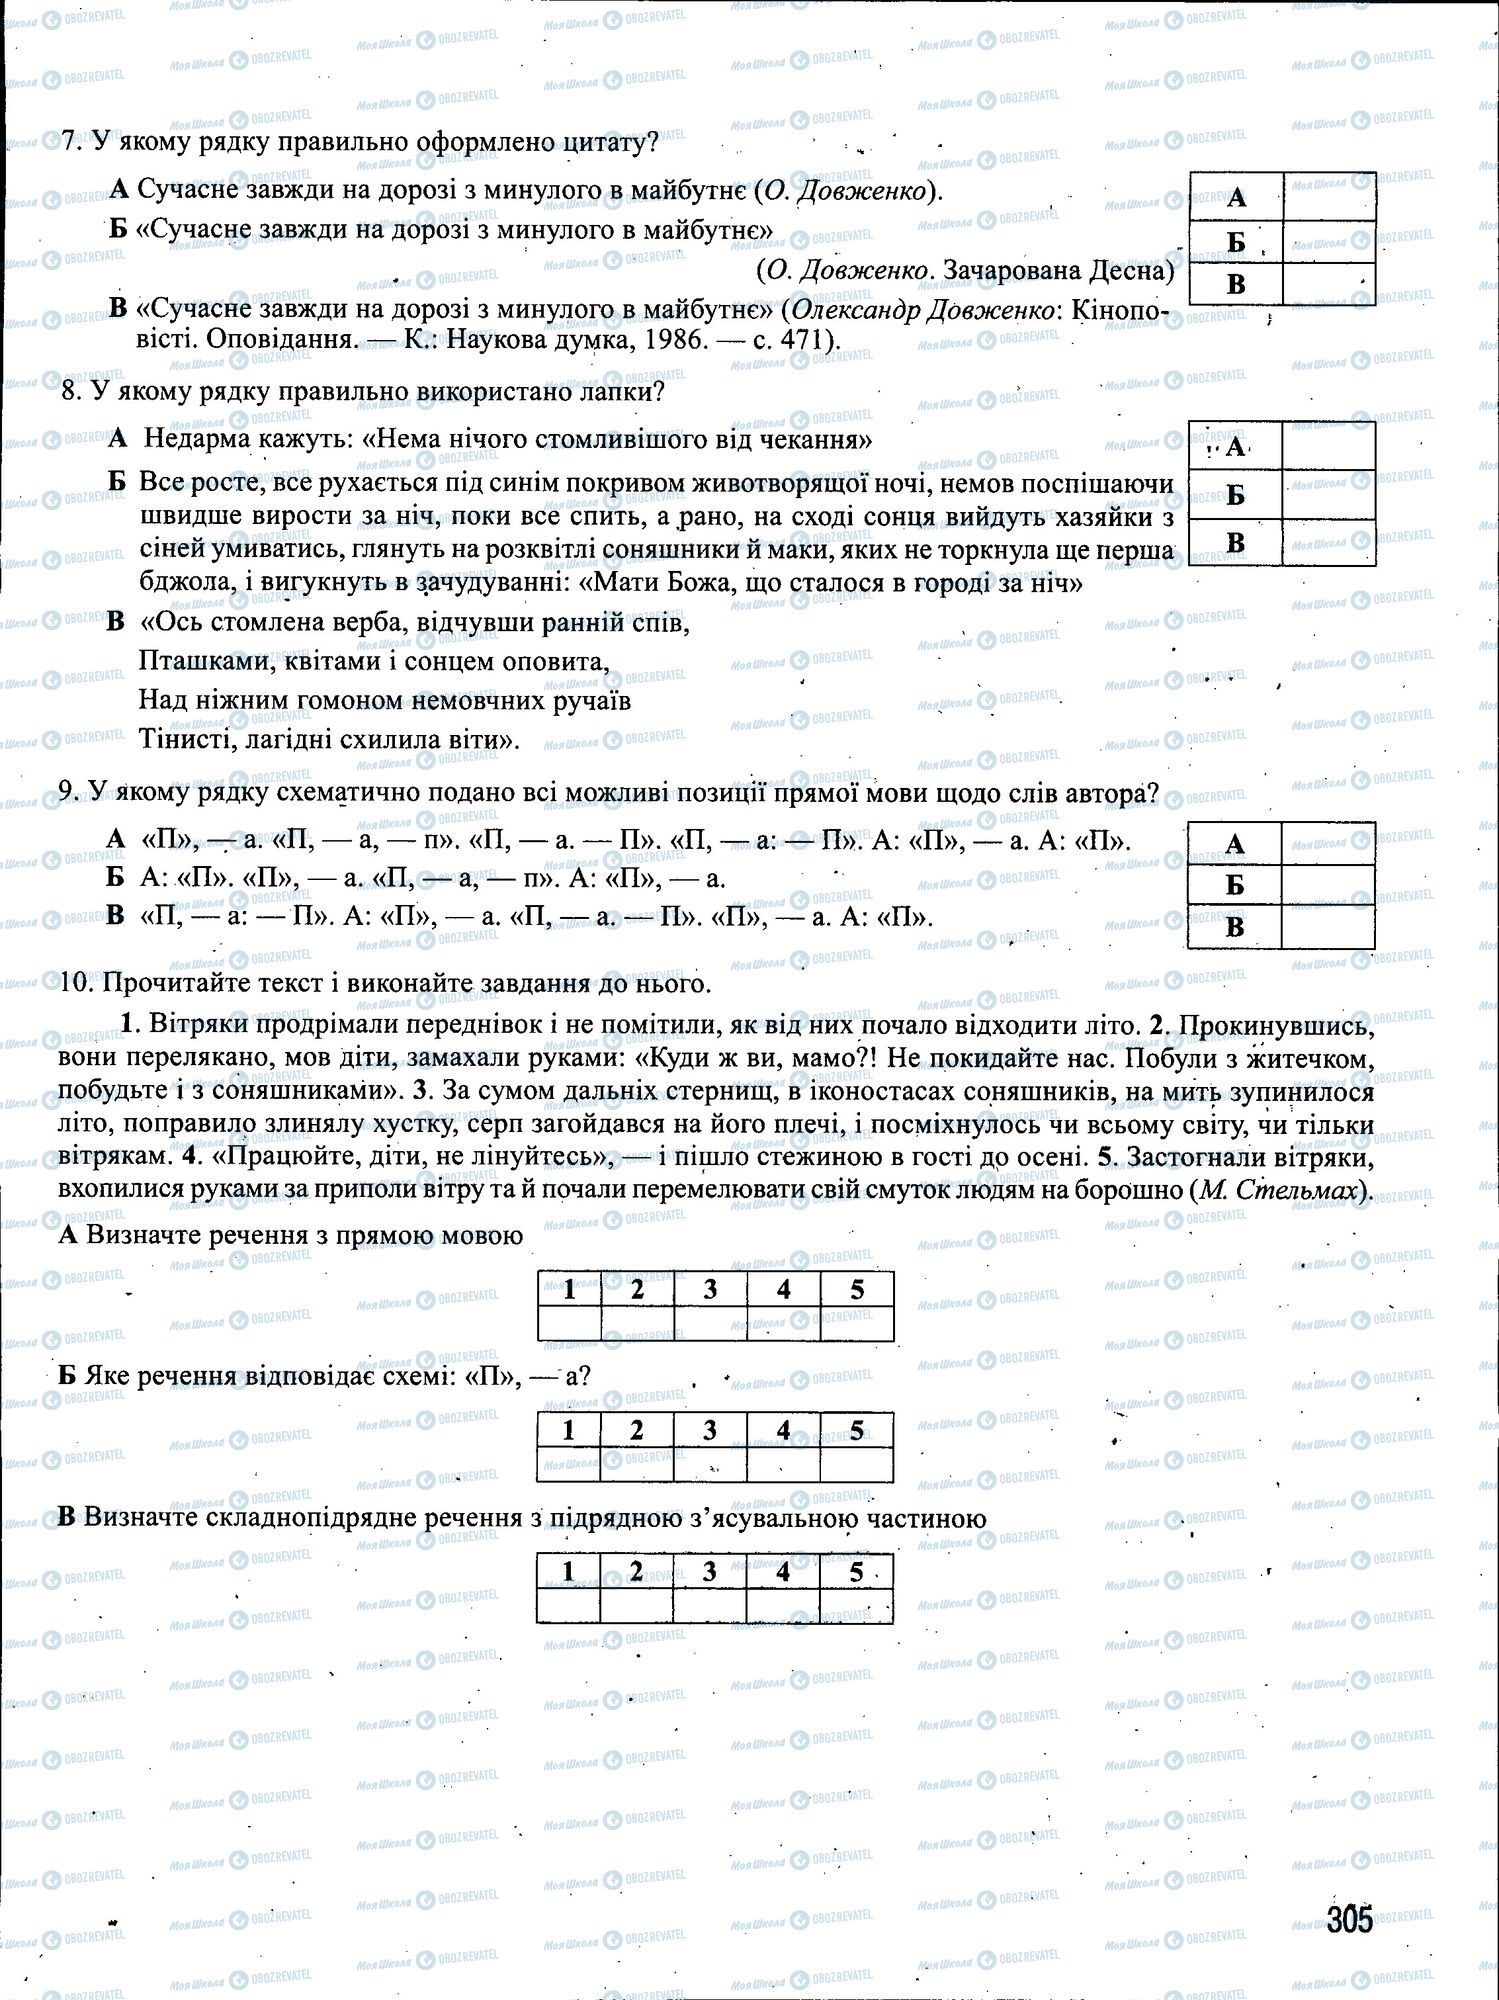 ЗНО Укр мова 11 класс страница 305